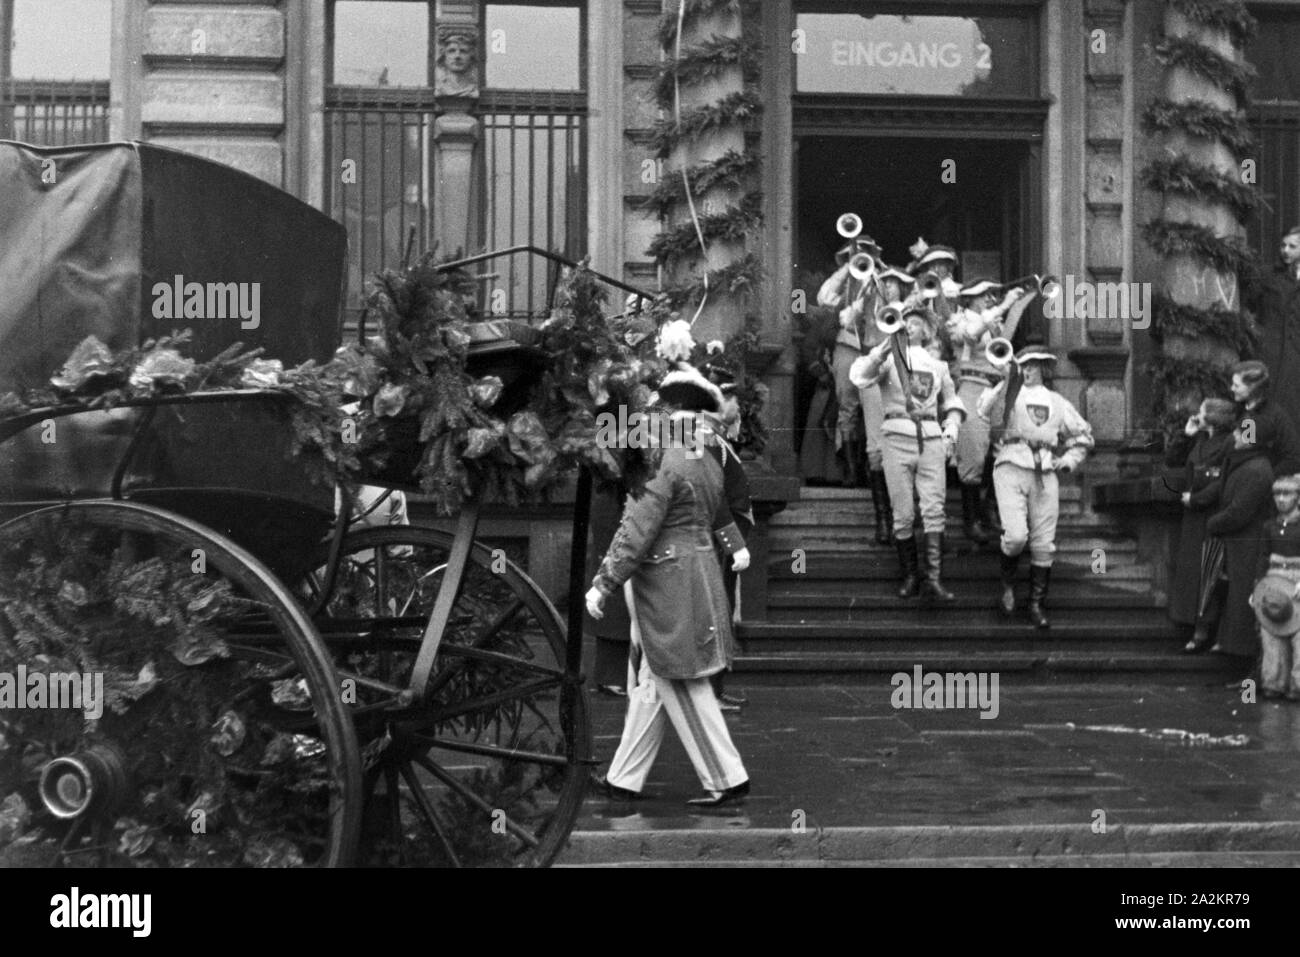 Mitten im Karneval der sessione 1937 a Düsseldorf unter dem motto "Lachendes Volk', Deutschland 1930er Jahre. In mezzo al carnevale di Duesseldorf con lo slogan "Lachendes Volk', Germania 1930s. Foto Stock